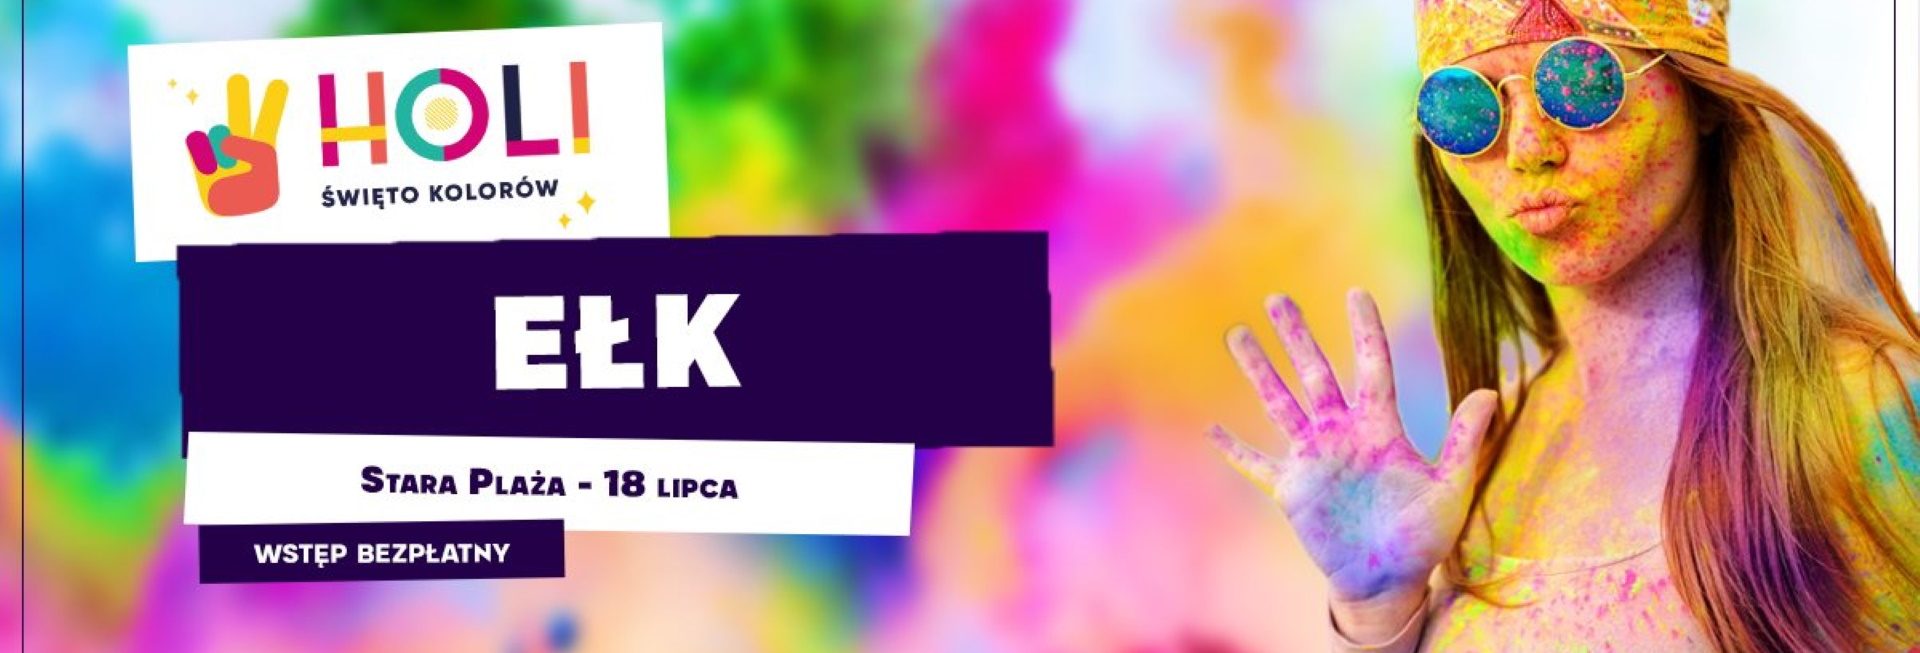 Plakat graficzny zapraszający do Ełku na imprezę Holi Święto Kolorów – Ełk 2021. Na plakacie widzimy dziewczynę - uczestniczkę imprezy całą ubrudzoną w kolorowym proszku.  